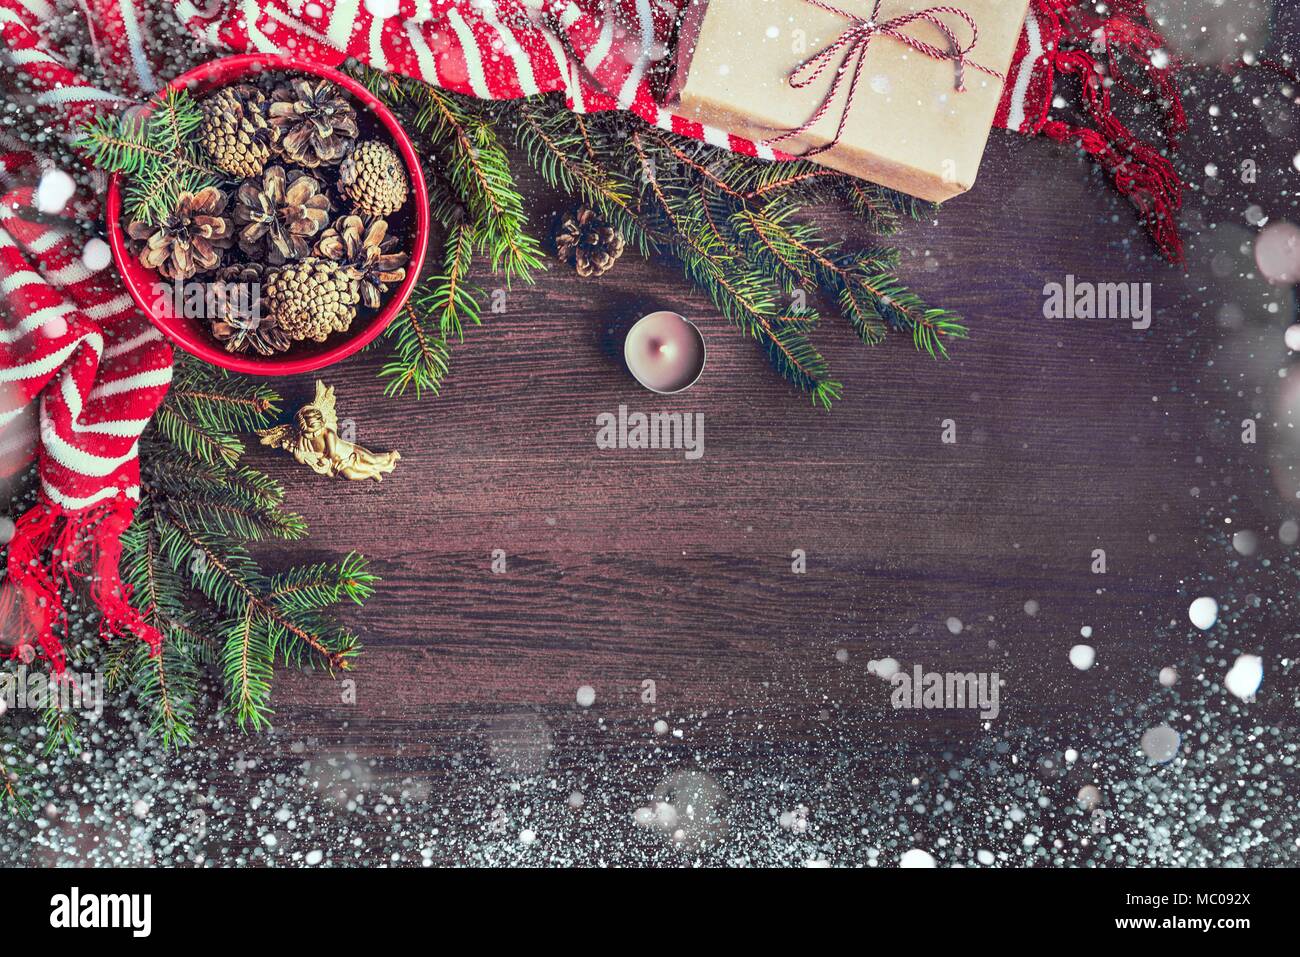 Vista superiore della decorazione di Natale - rosso ciotola piena di abeti-coni, confezione regalo avvolti in carta kraft, Golden Angel, rami di pino, candela e di colore rosso e bianco Foto Stock